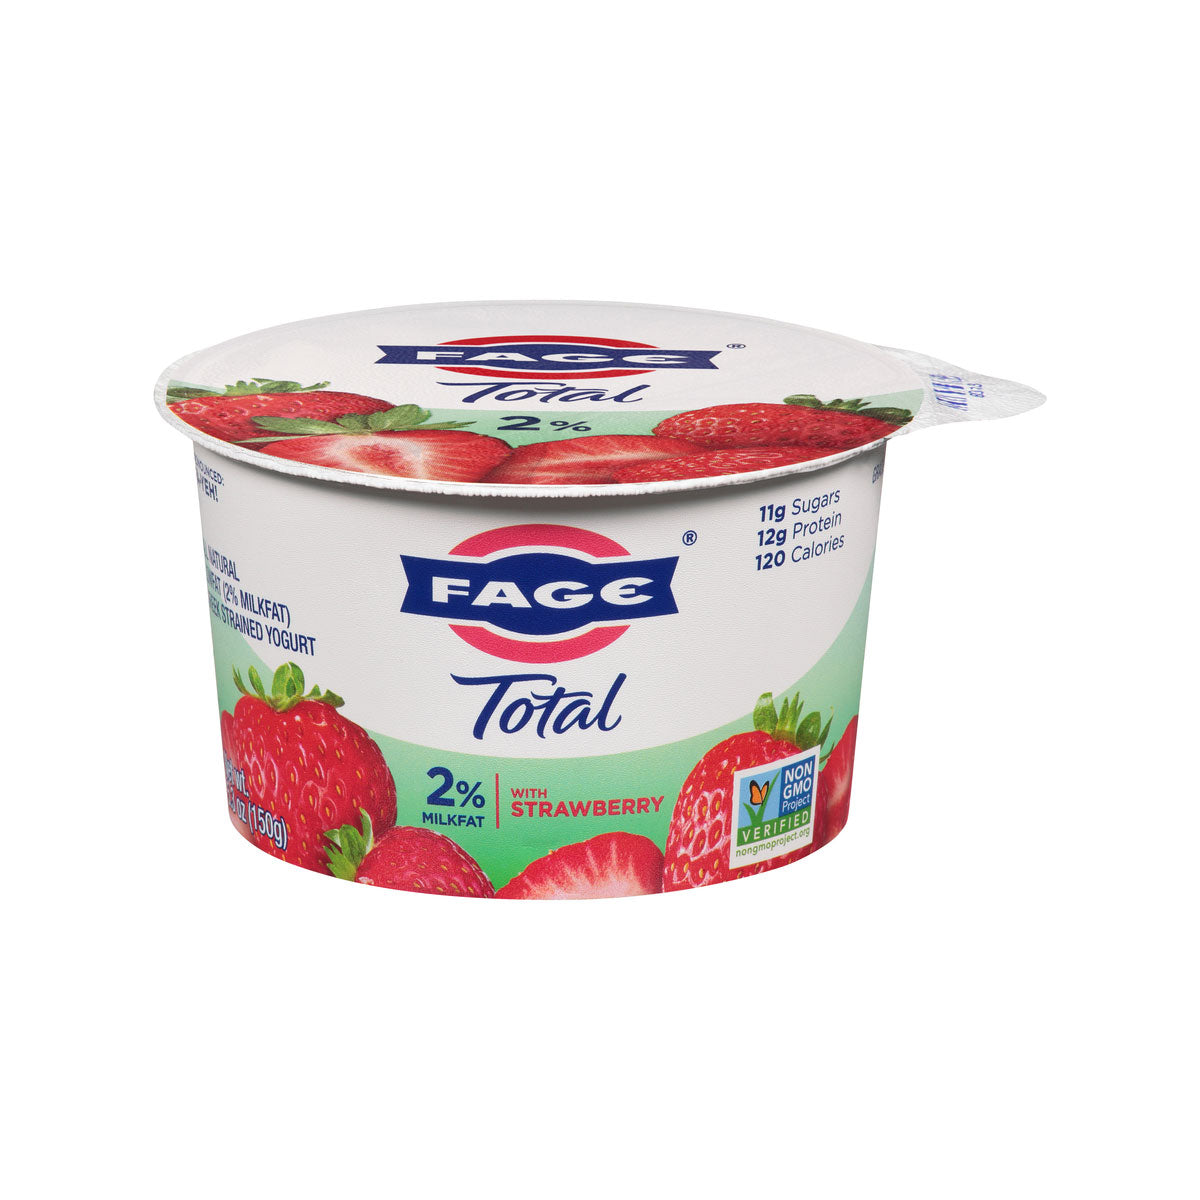 BoxNCase 2% Greek Yogurt with Strawberry 5.3 oz Jar